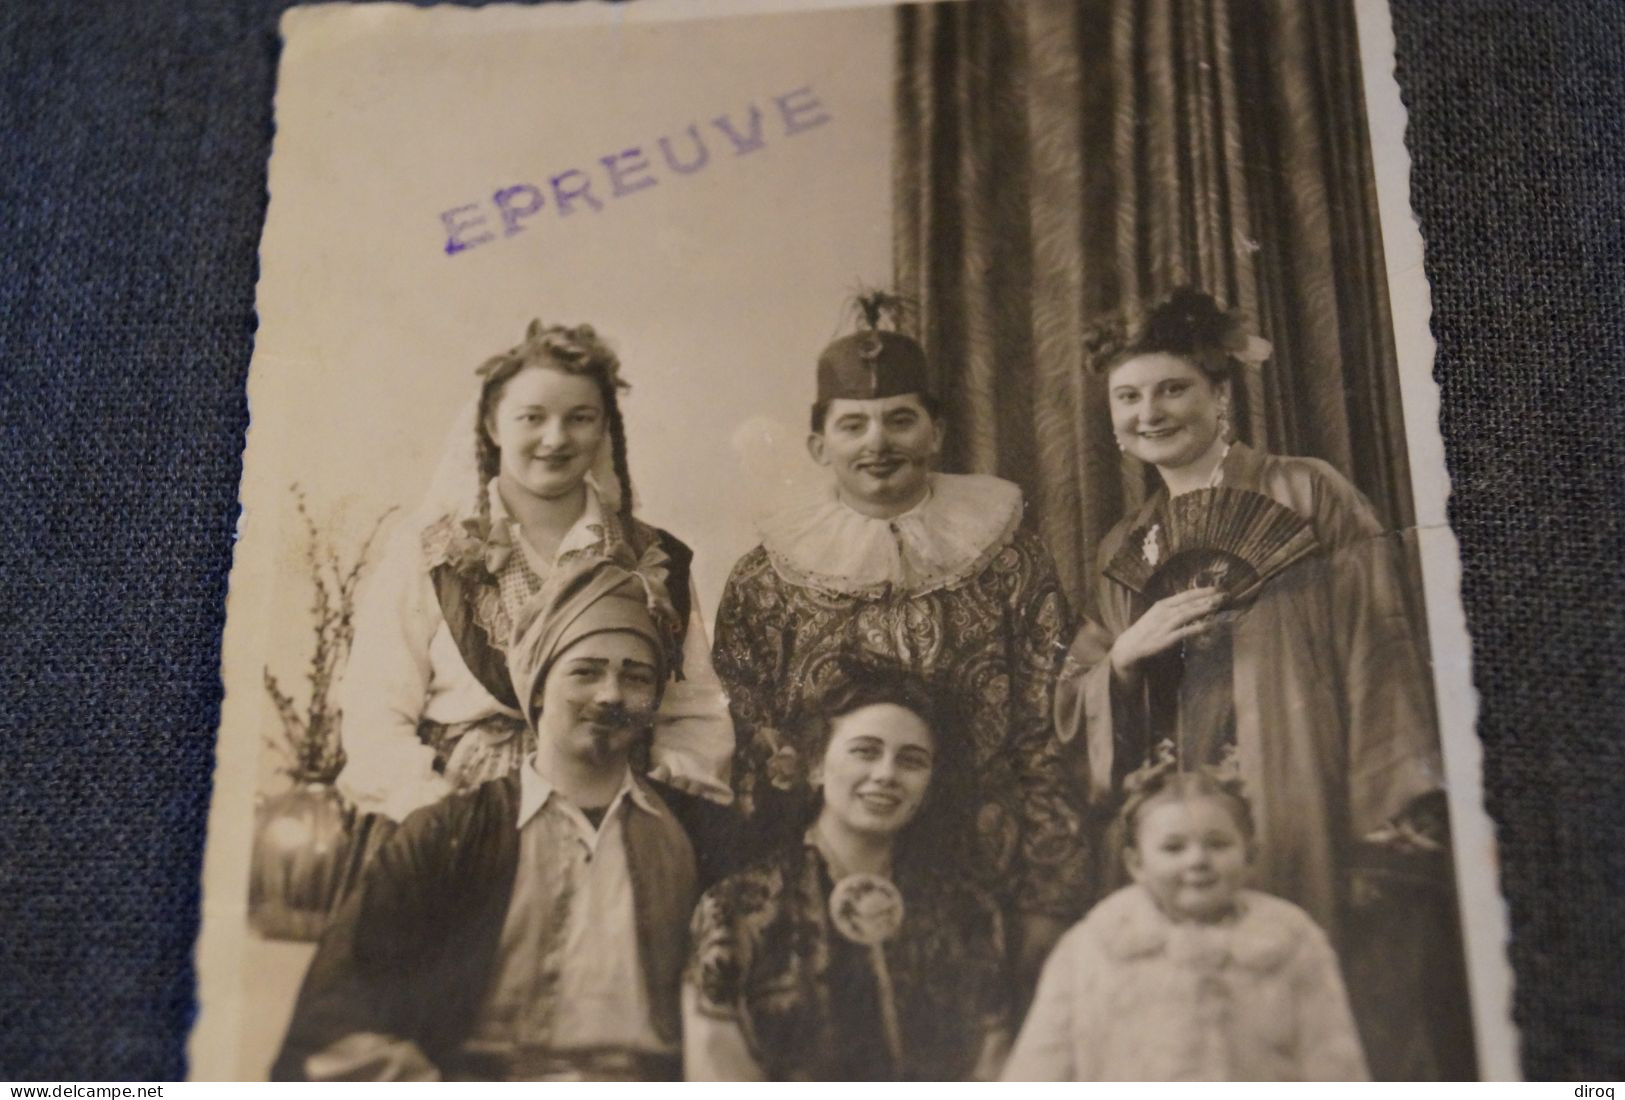 Carte Photo Carnaval 1946, EPREUVE,belle Carte Ancienne,originale Pour Collection - People